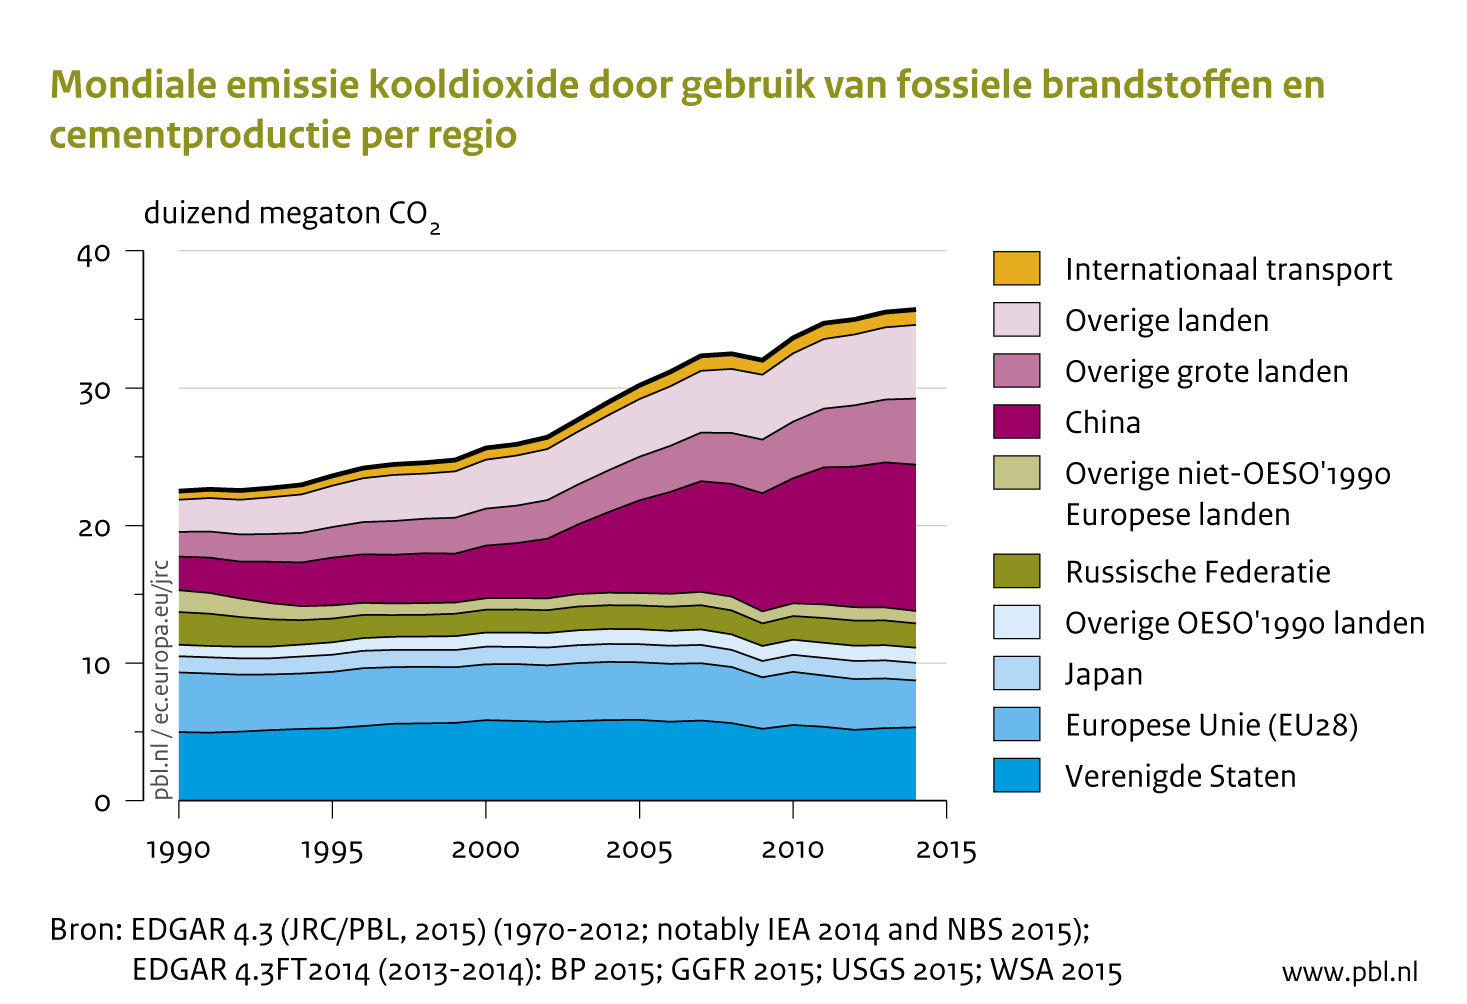 Mondiale emissie kooldioxide door gebruik van fossiele brandstoffen en cementproductie per regio. Zie de tekst voor de figuur voor aanvullende uitleg